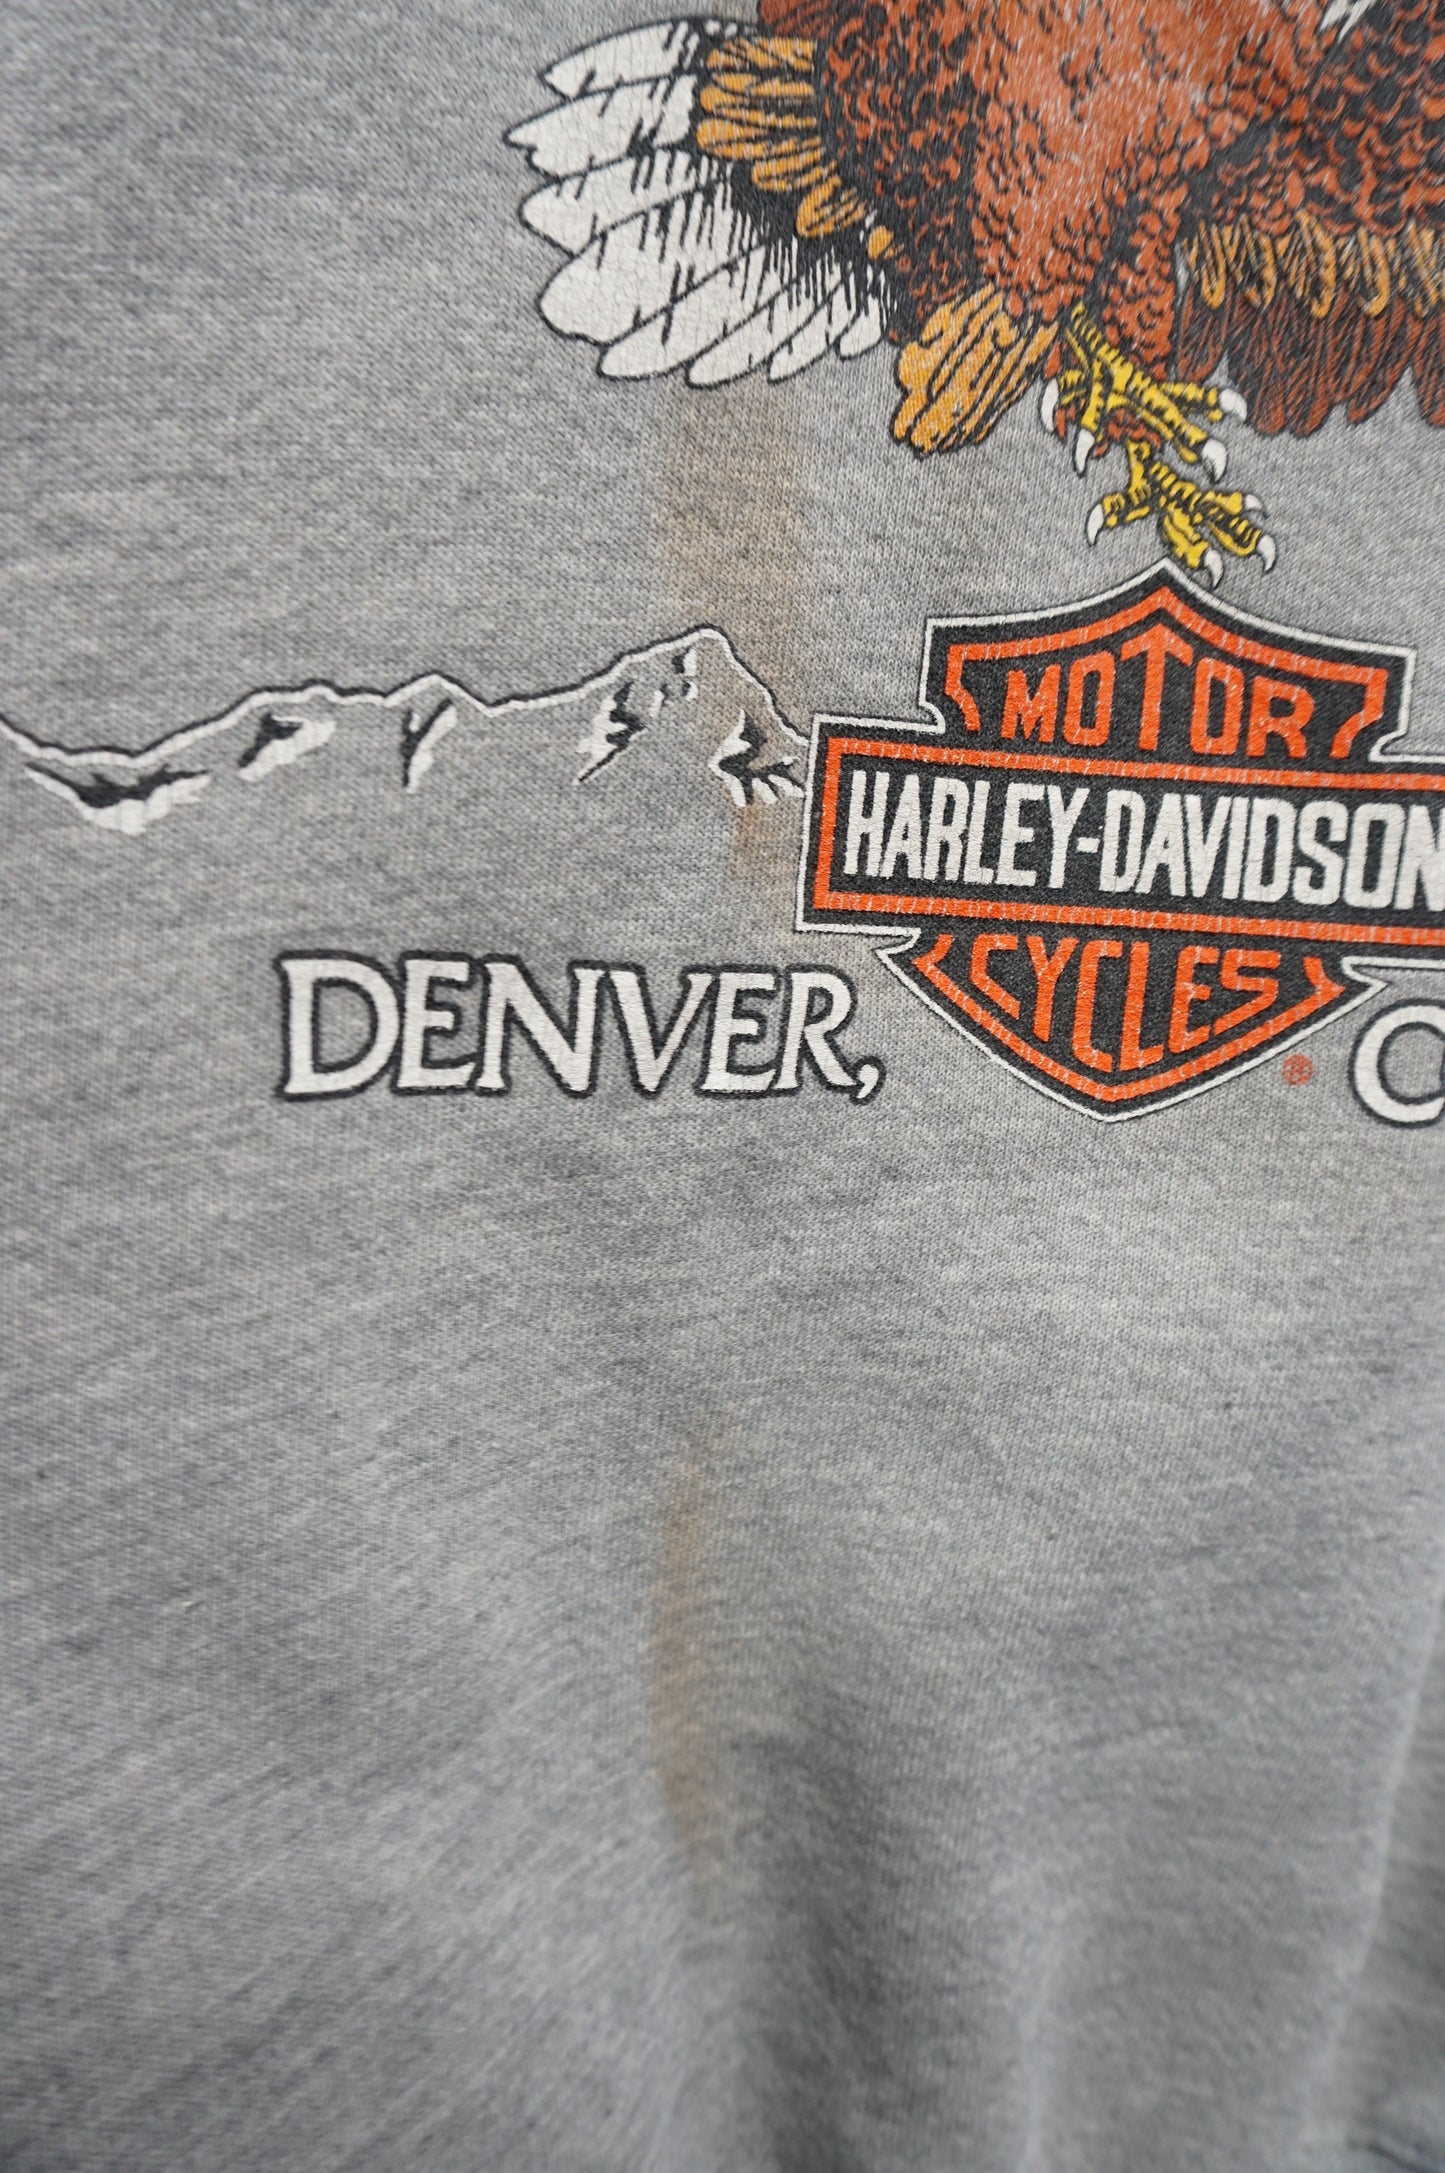 (L) 2000 Denver Harley Davidson Eagle Crewneck